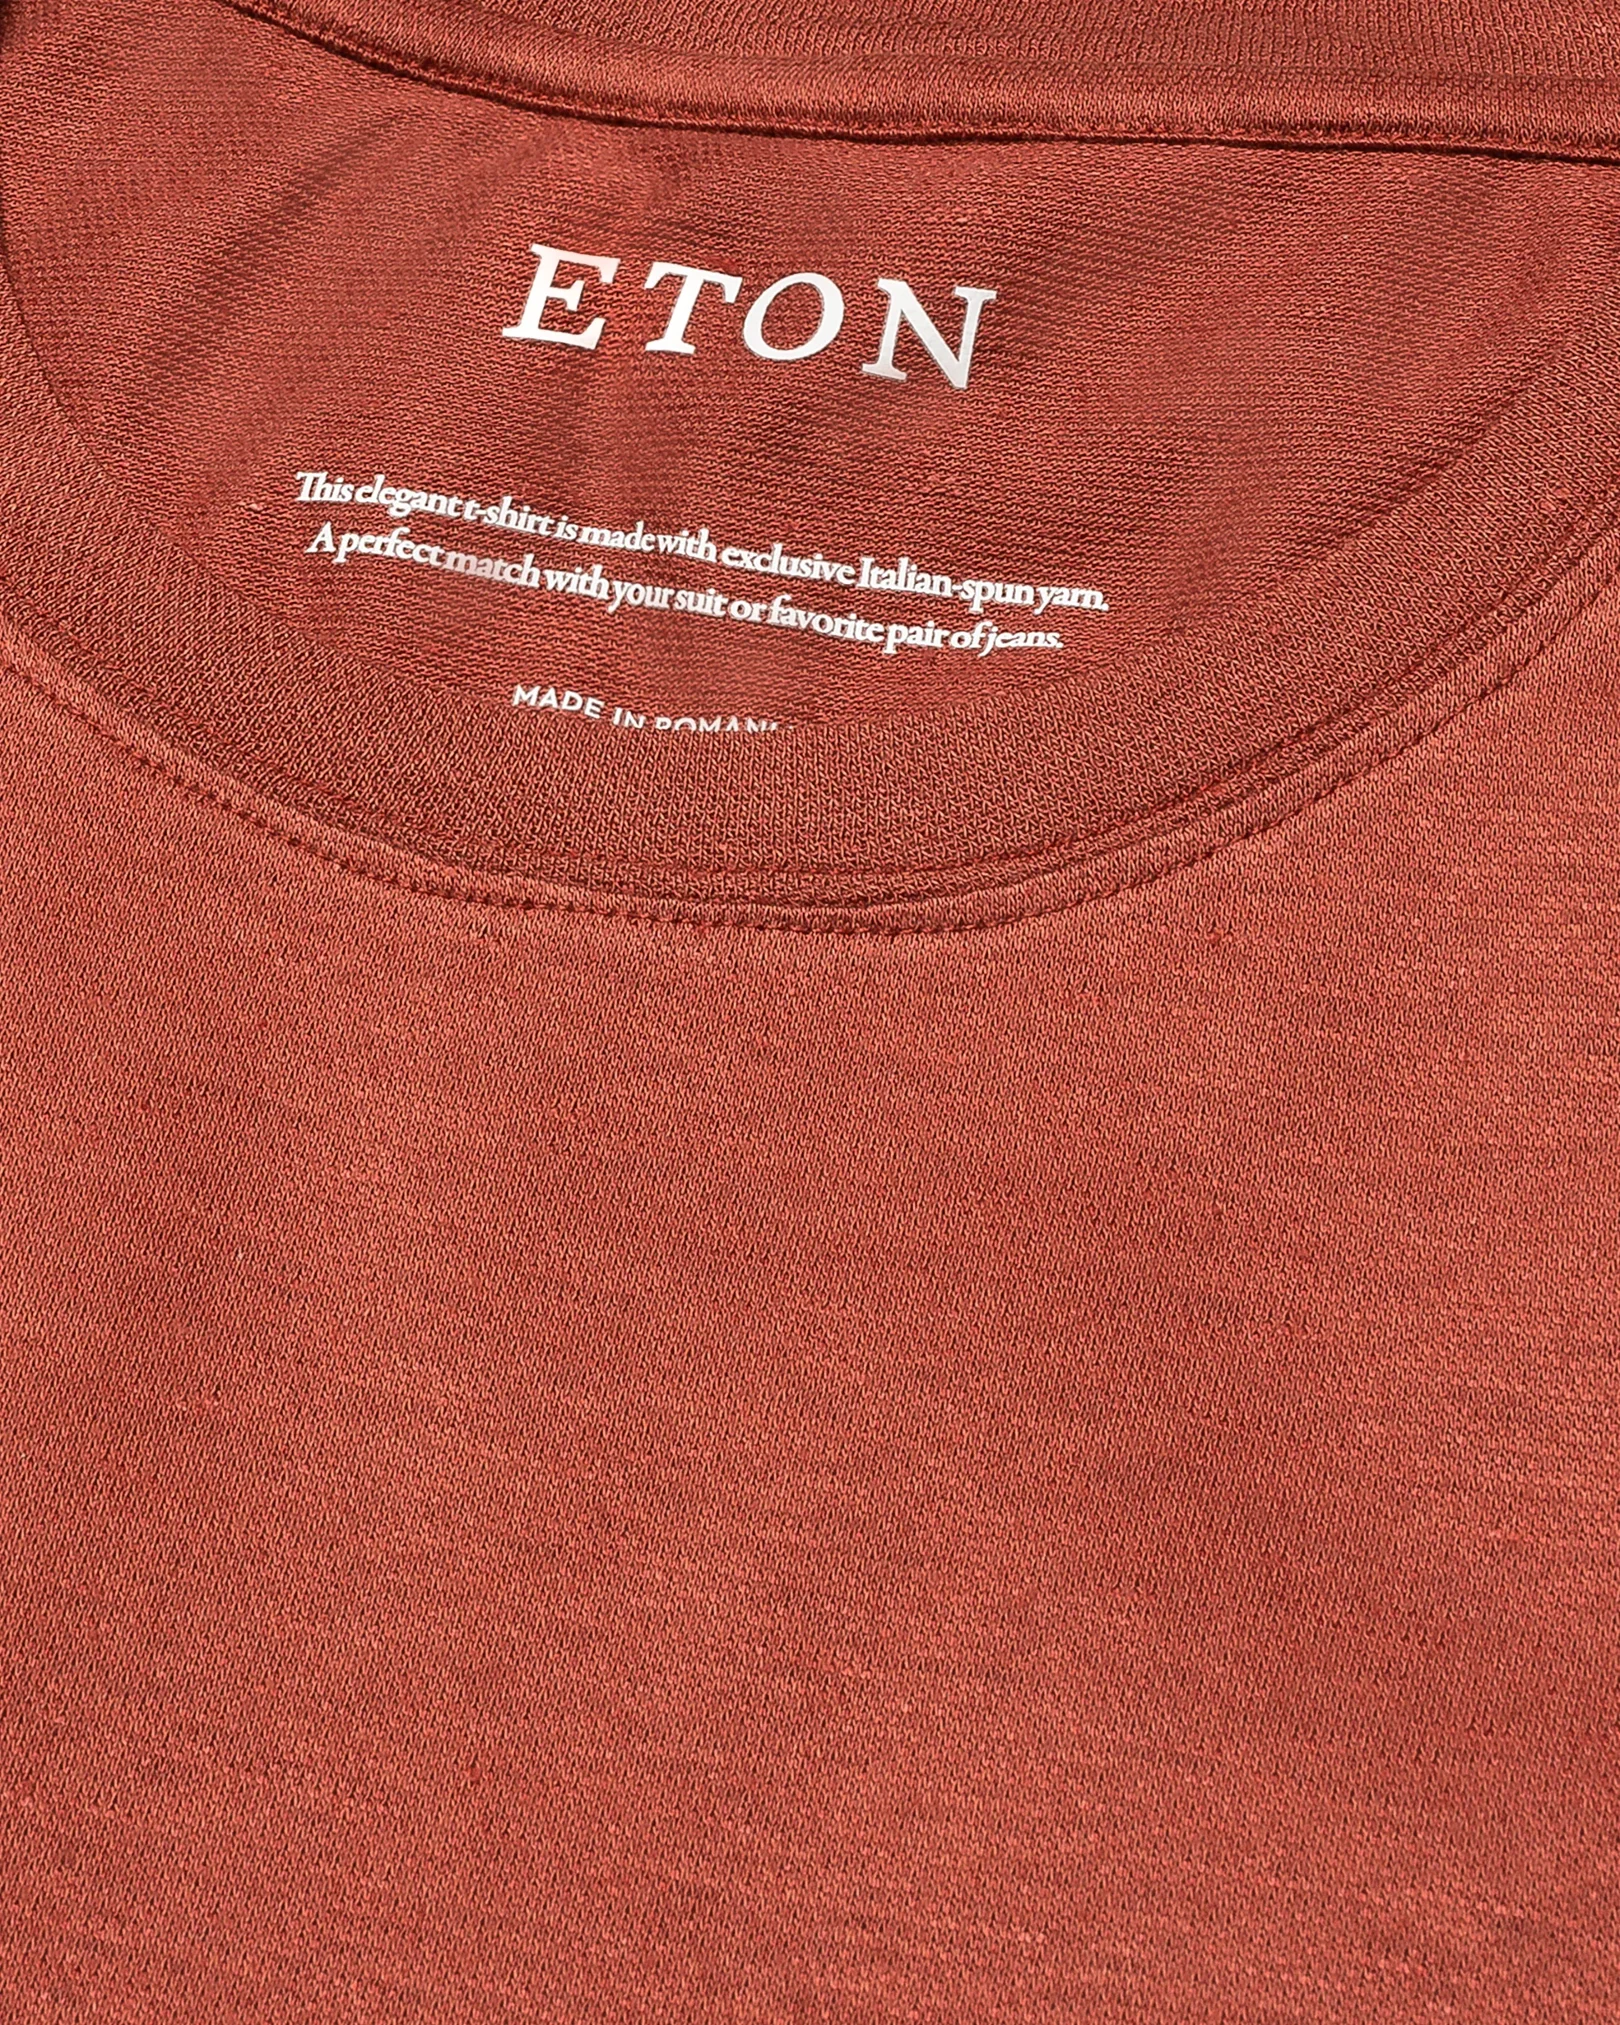 Eton - orange pique t shirt short sleeve boxfit t shirt